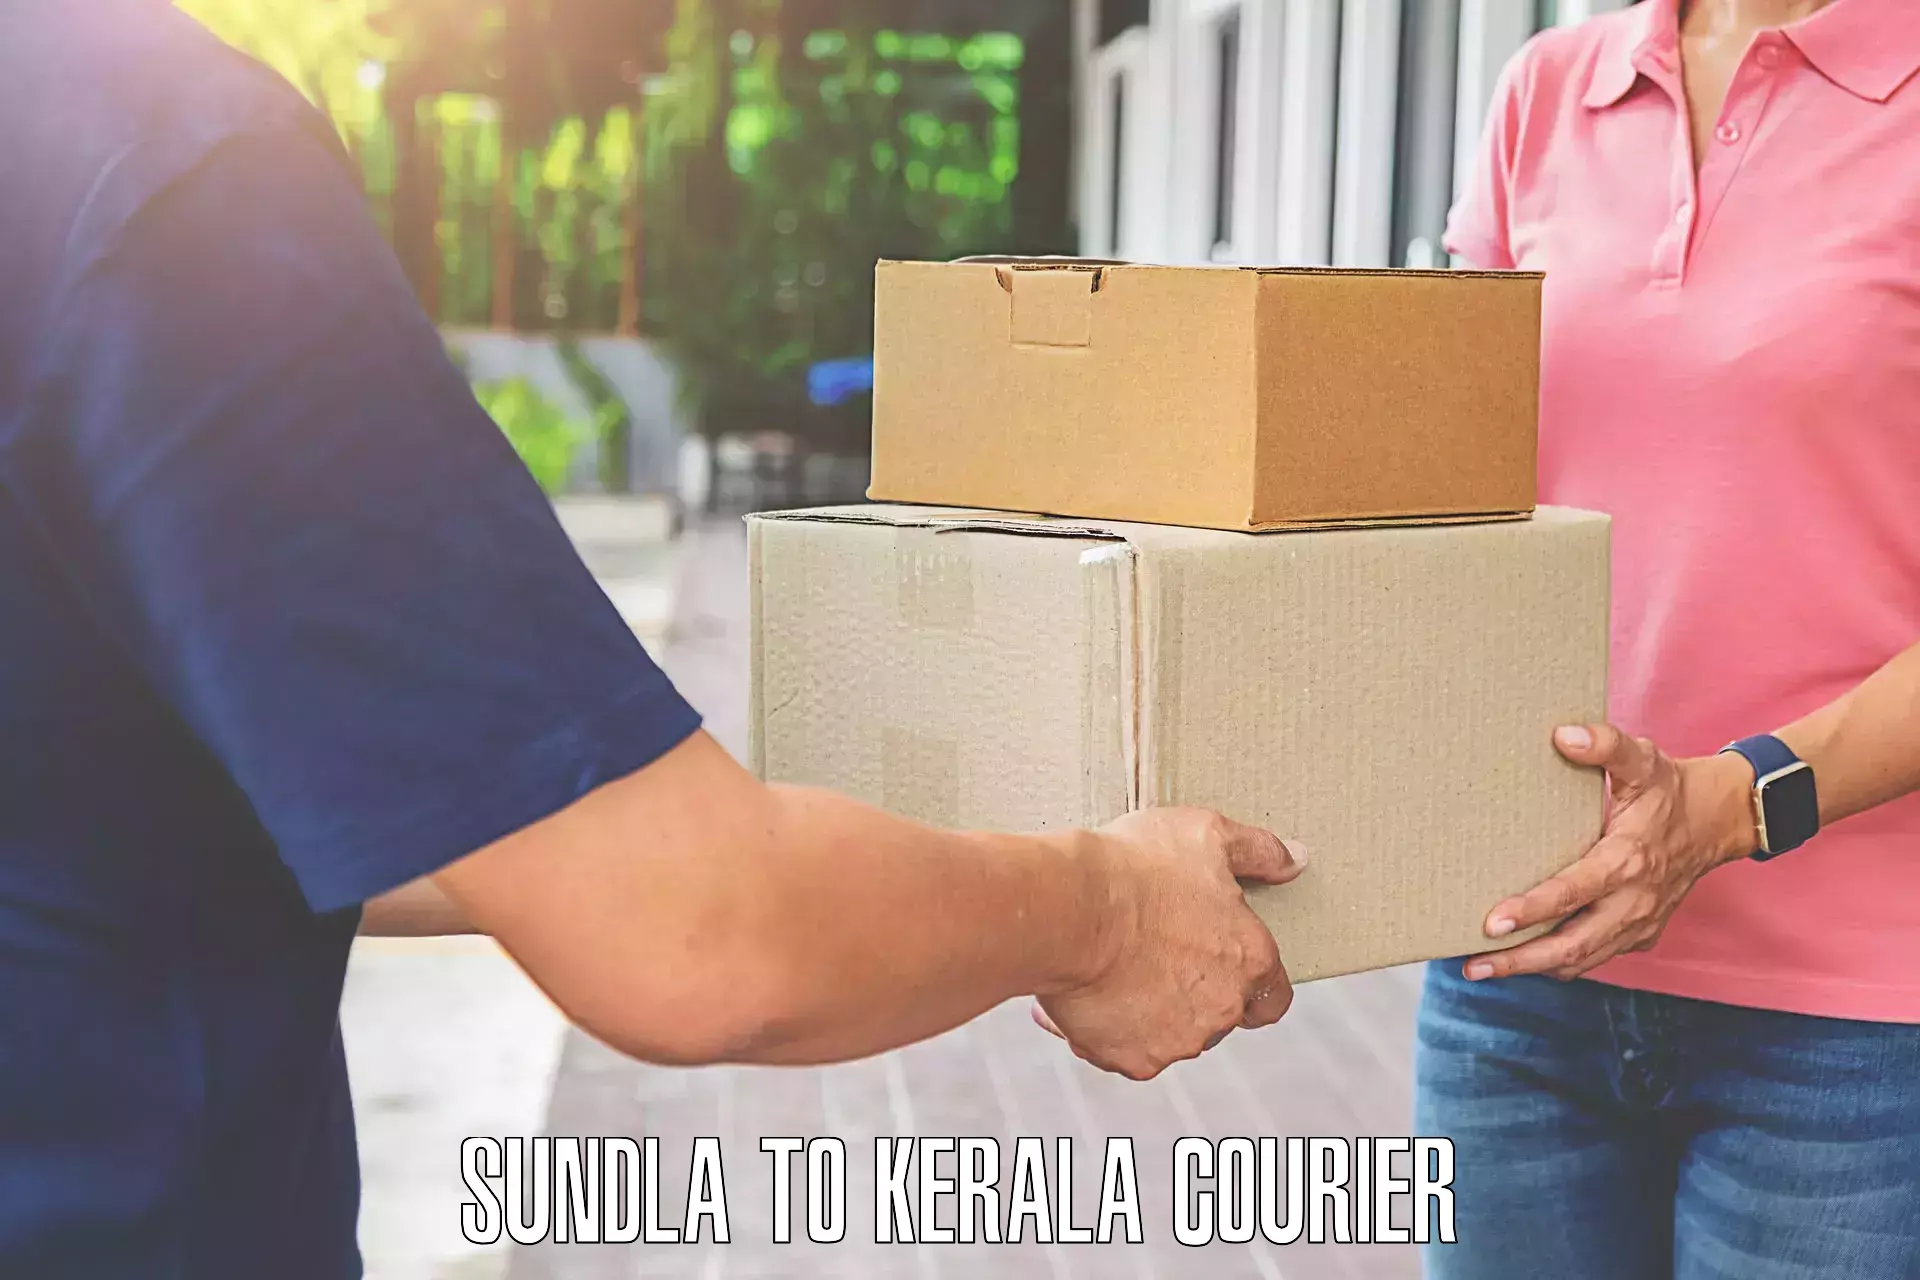 Automated luggage transport Sundla to Kerala